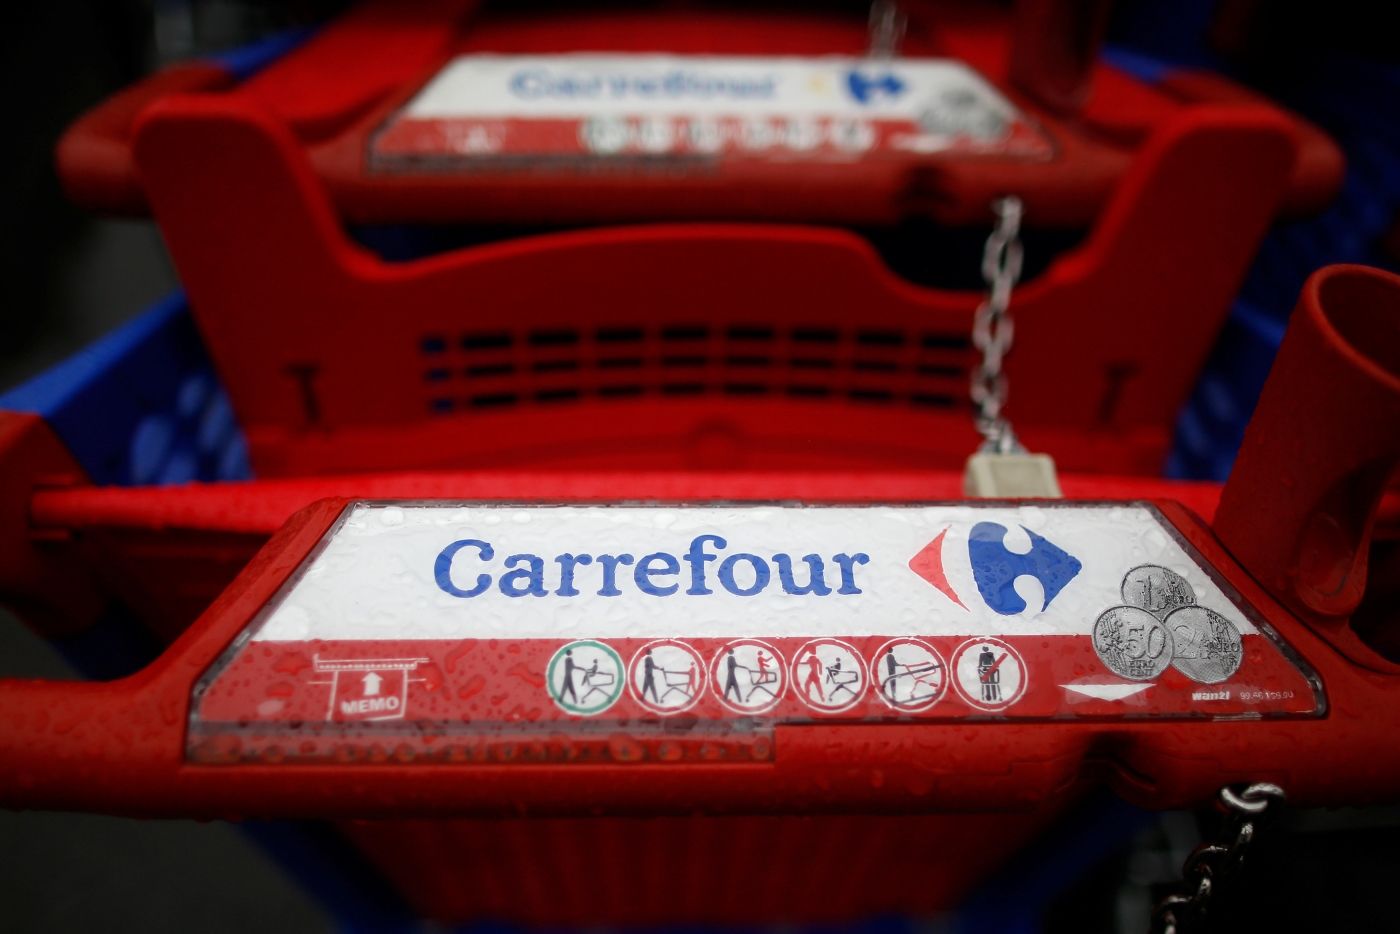 La chaîne Carrefour en France va geler les prix en raison de l’inflation.  Cela s’applique à des centaines de produits